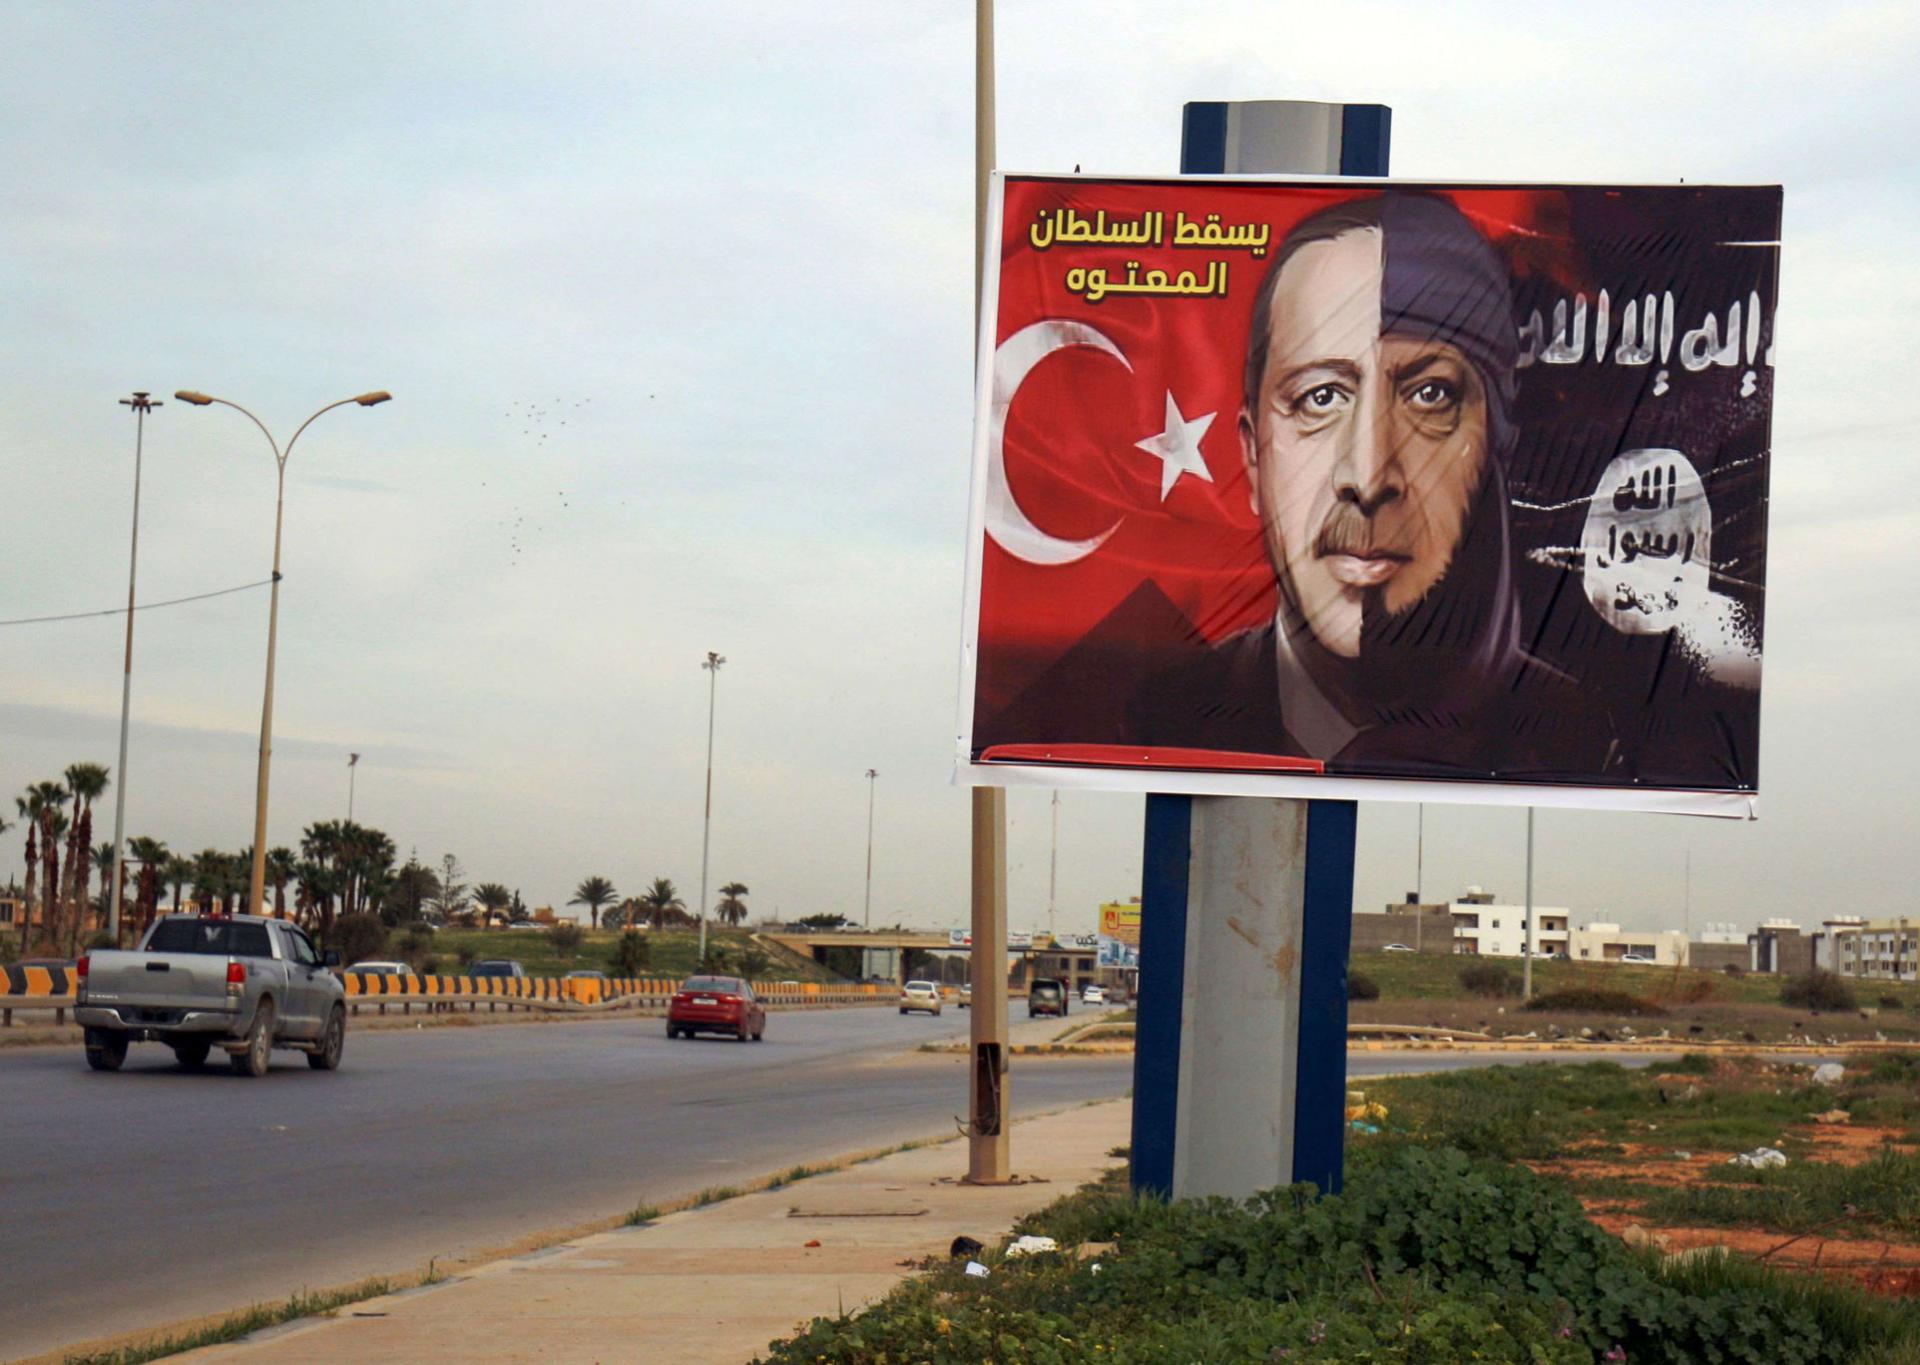 لافتة في بنغازي تندد بالرئيس التركي